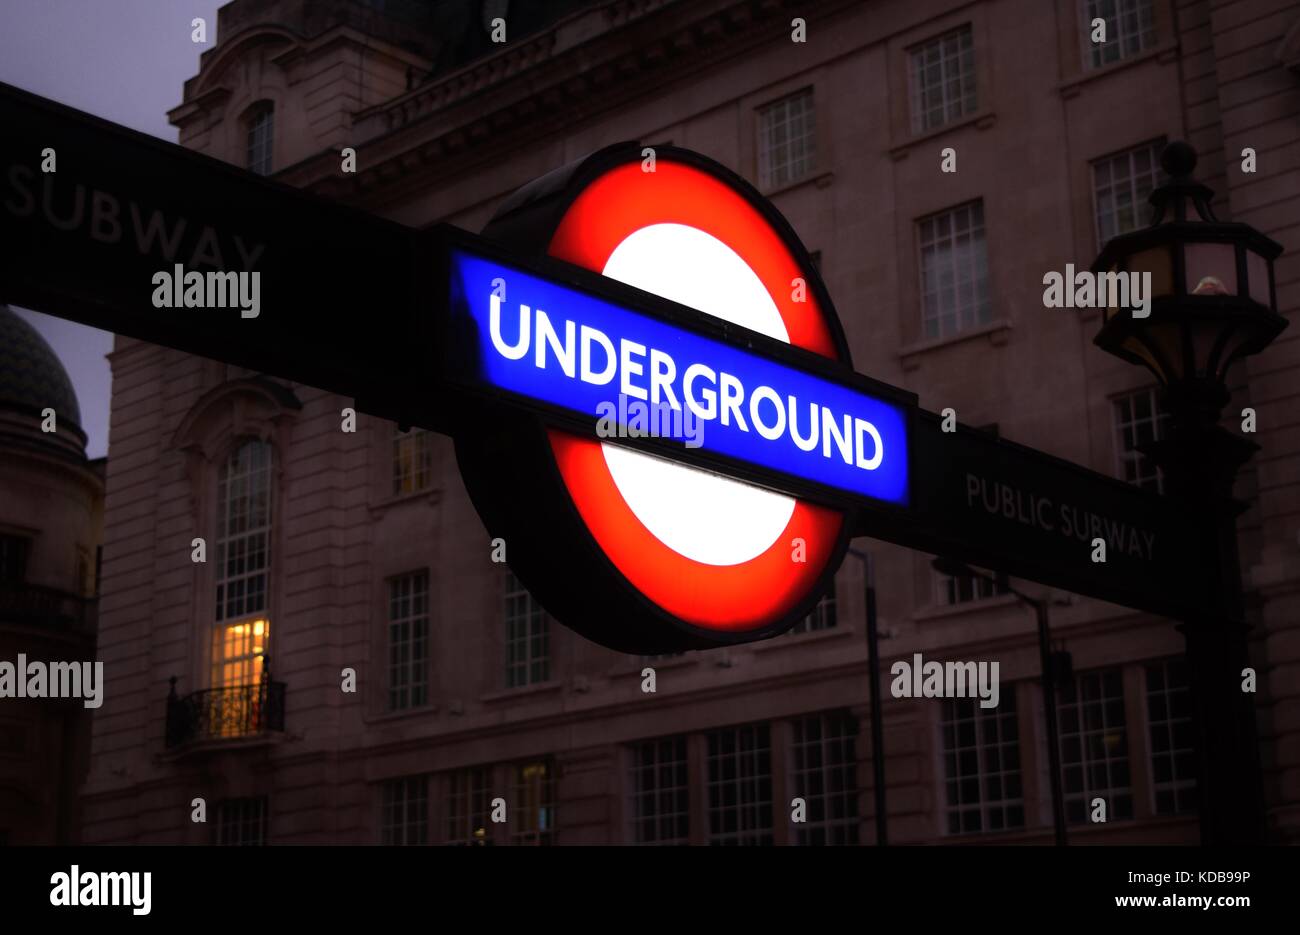 Un illuminé panneau à l'entrée d'un métro de Londres, tube, ou - un symbole de Londres de transport. Royaume-uni, Angleterre. Banque D'Images